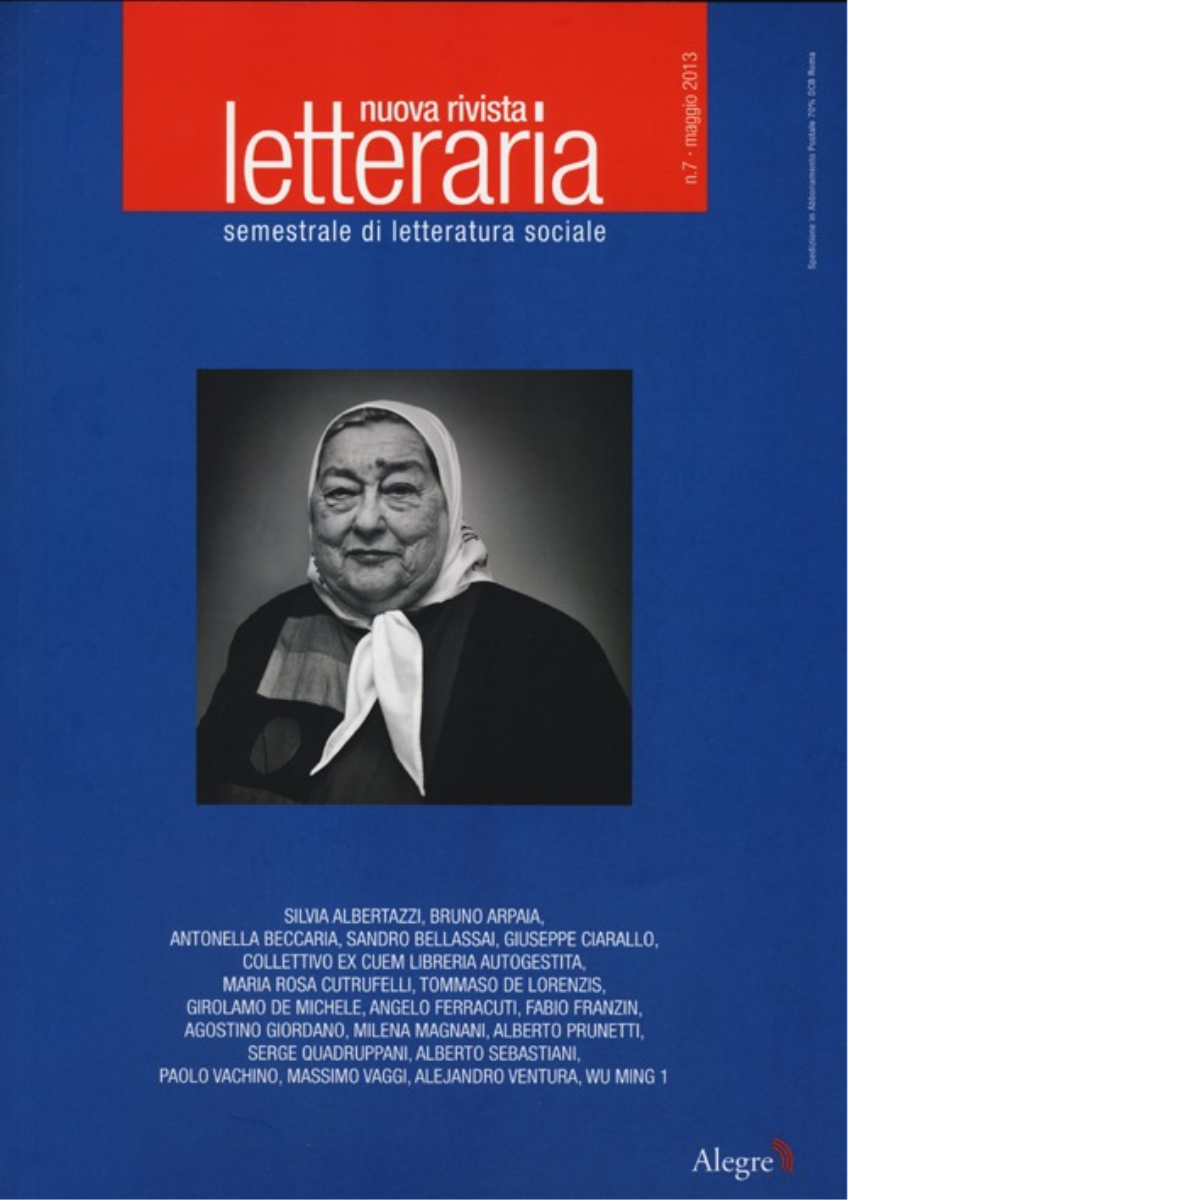 NUOVA RIVISTA LETTERARIA (2013) di AA.VV. - edizioni alegre, 2013